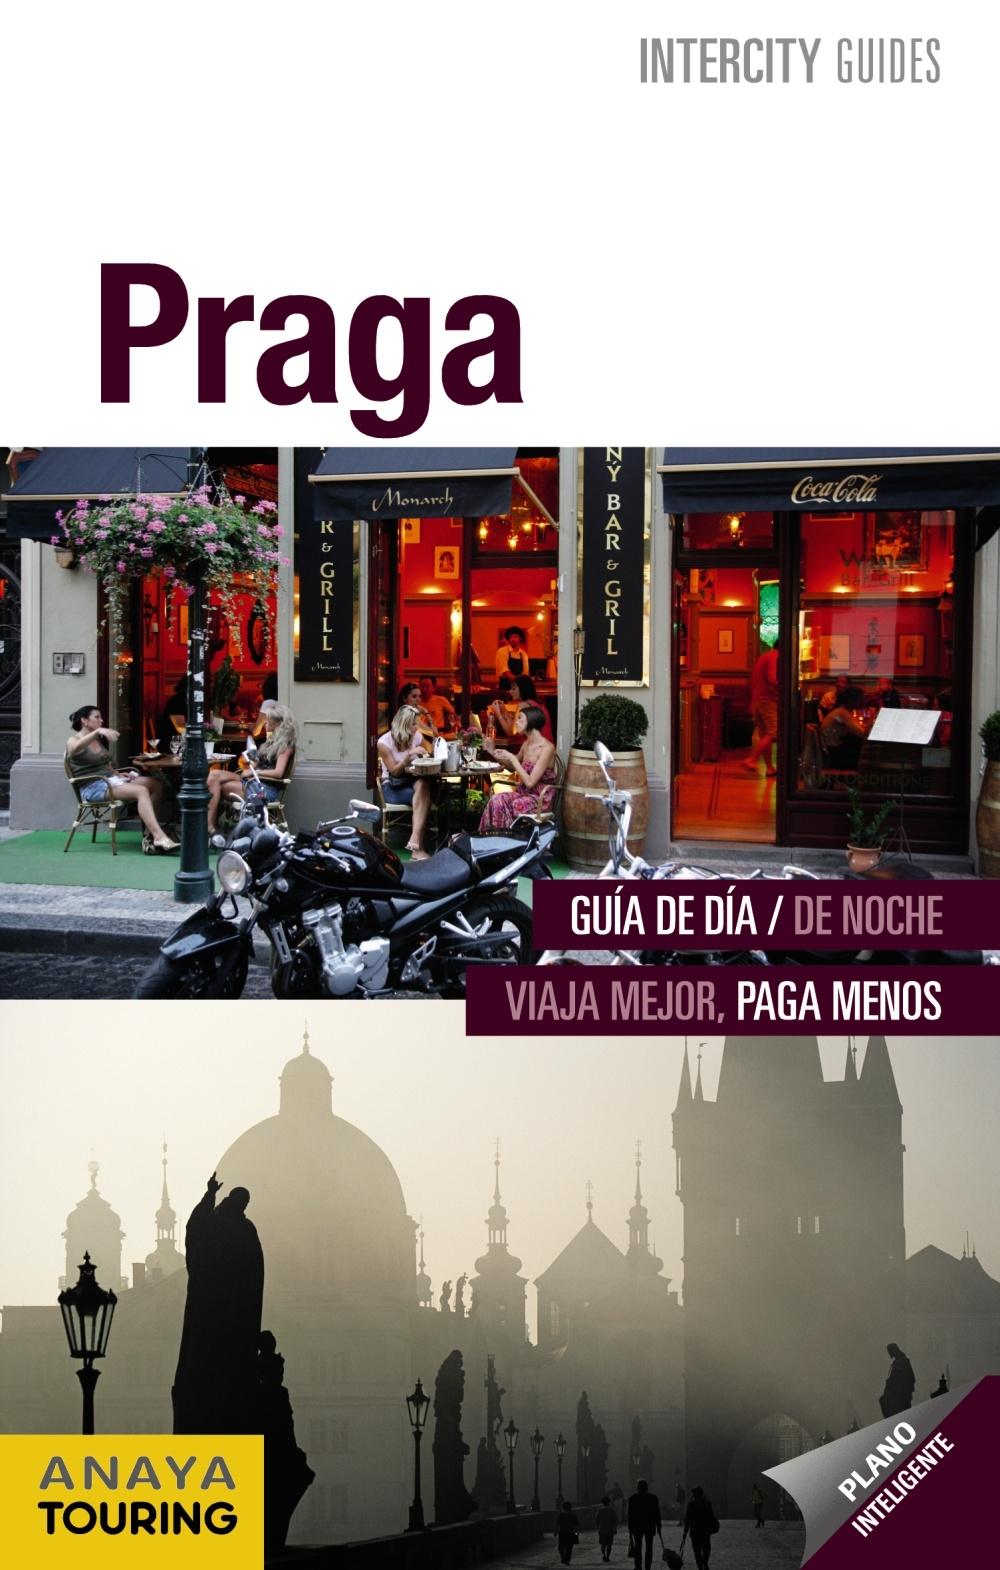 PRAGA. INTERCITY GUIDES